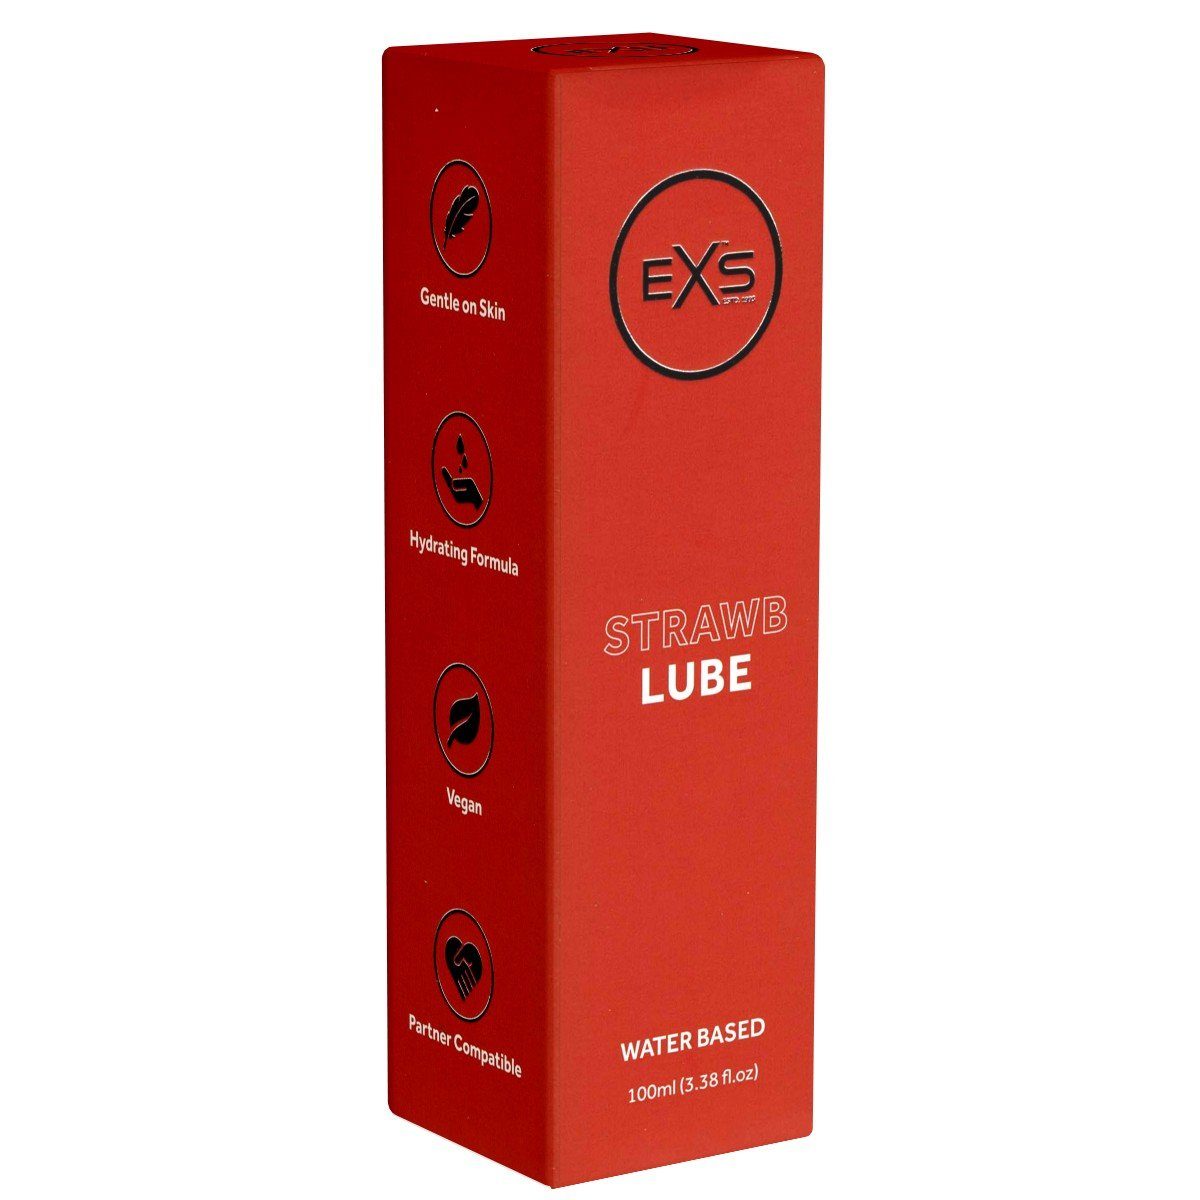 EXS Gleitgel Strawb Lube - Premium Strawberry Lubricant Gel, Flasche mit 250ml, mit fruchtigem Erdbeergeschmack